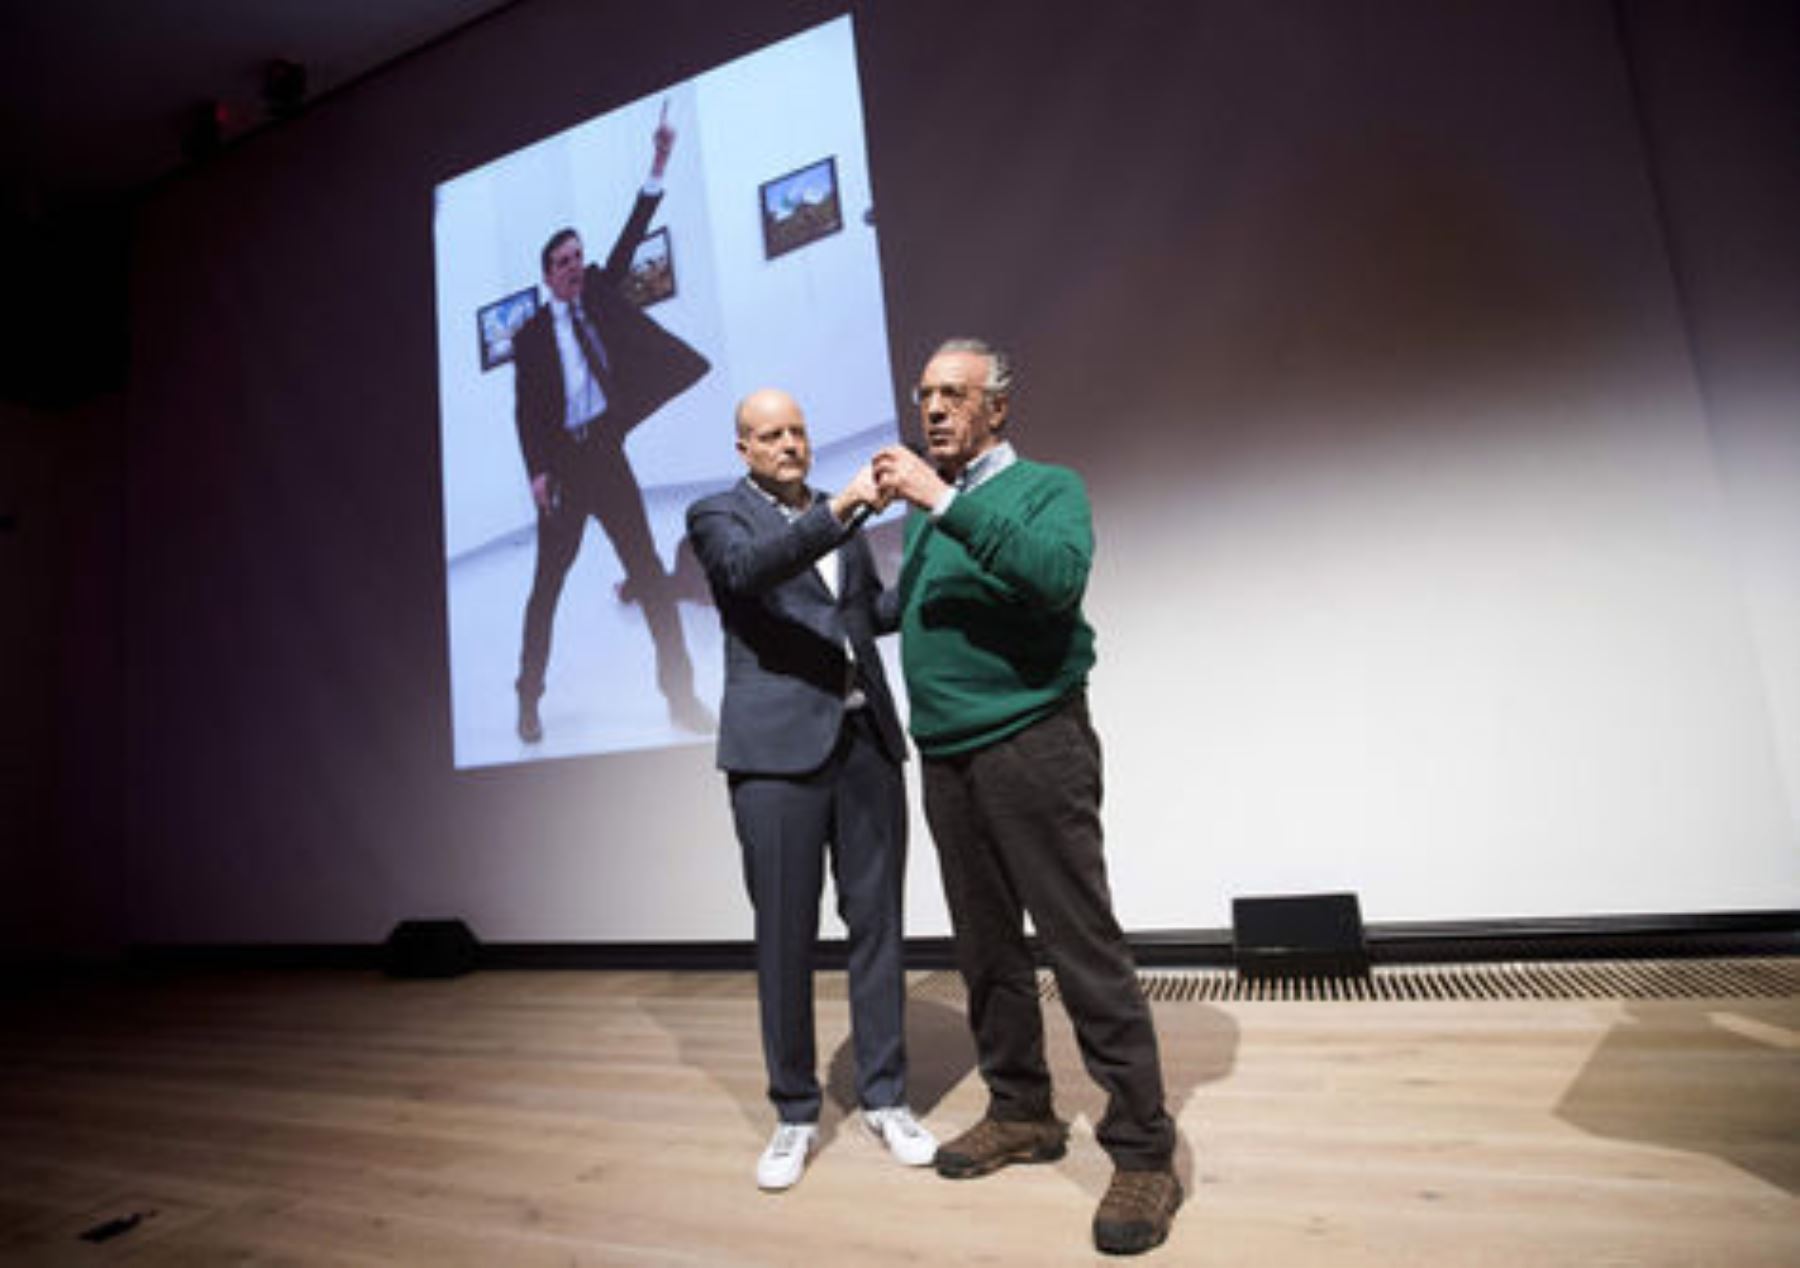 El ganador del premio World Press Photo 2016 Burhan Ozbilici (der.) y el director de la fundación que otorga el galardón, Lars Boering. Foto: AFP